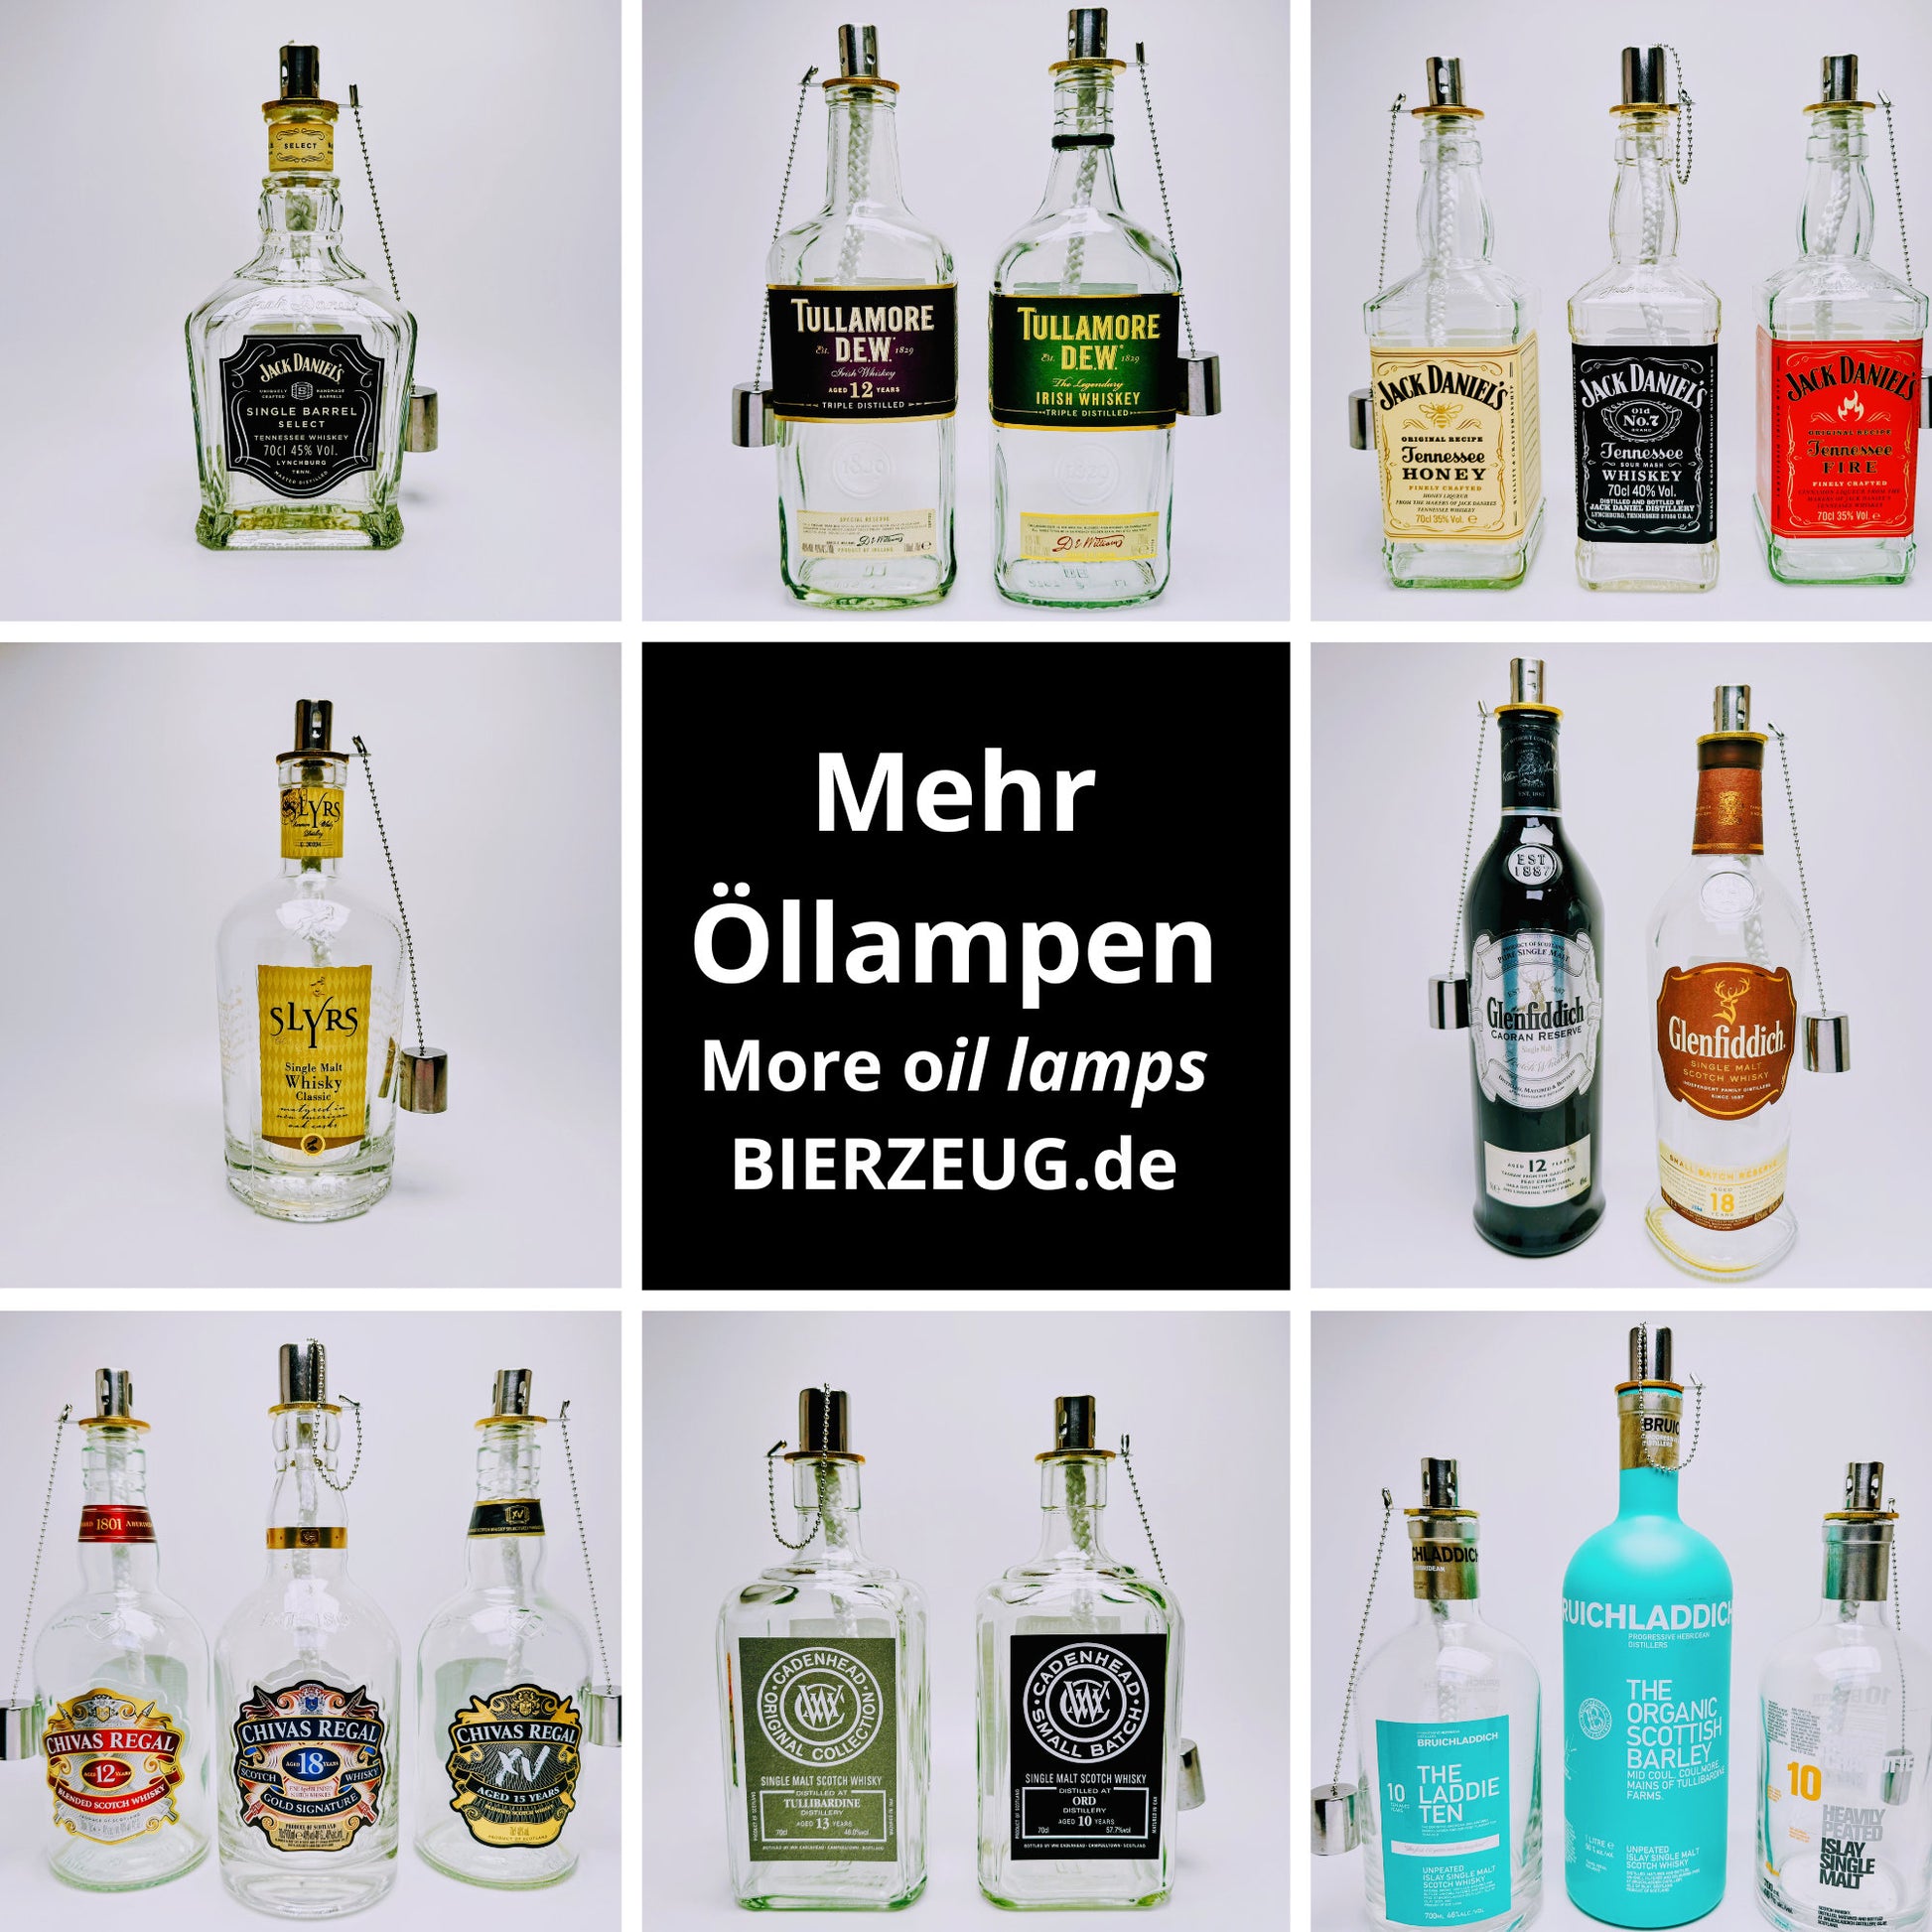 Whisky-Öllampe "Bruichladdich" | Handgemachte Öllampe aus Bruichladdich Flaschen | Upcycling | Individuell | Geschenk | Schottland | Deko